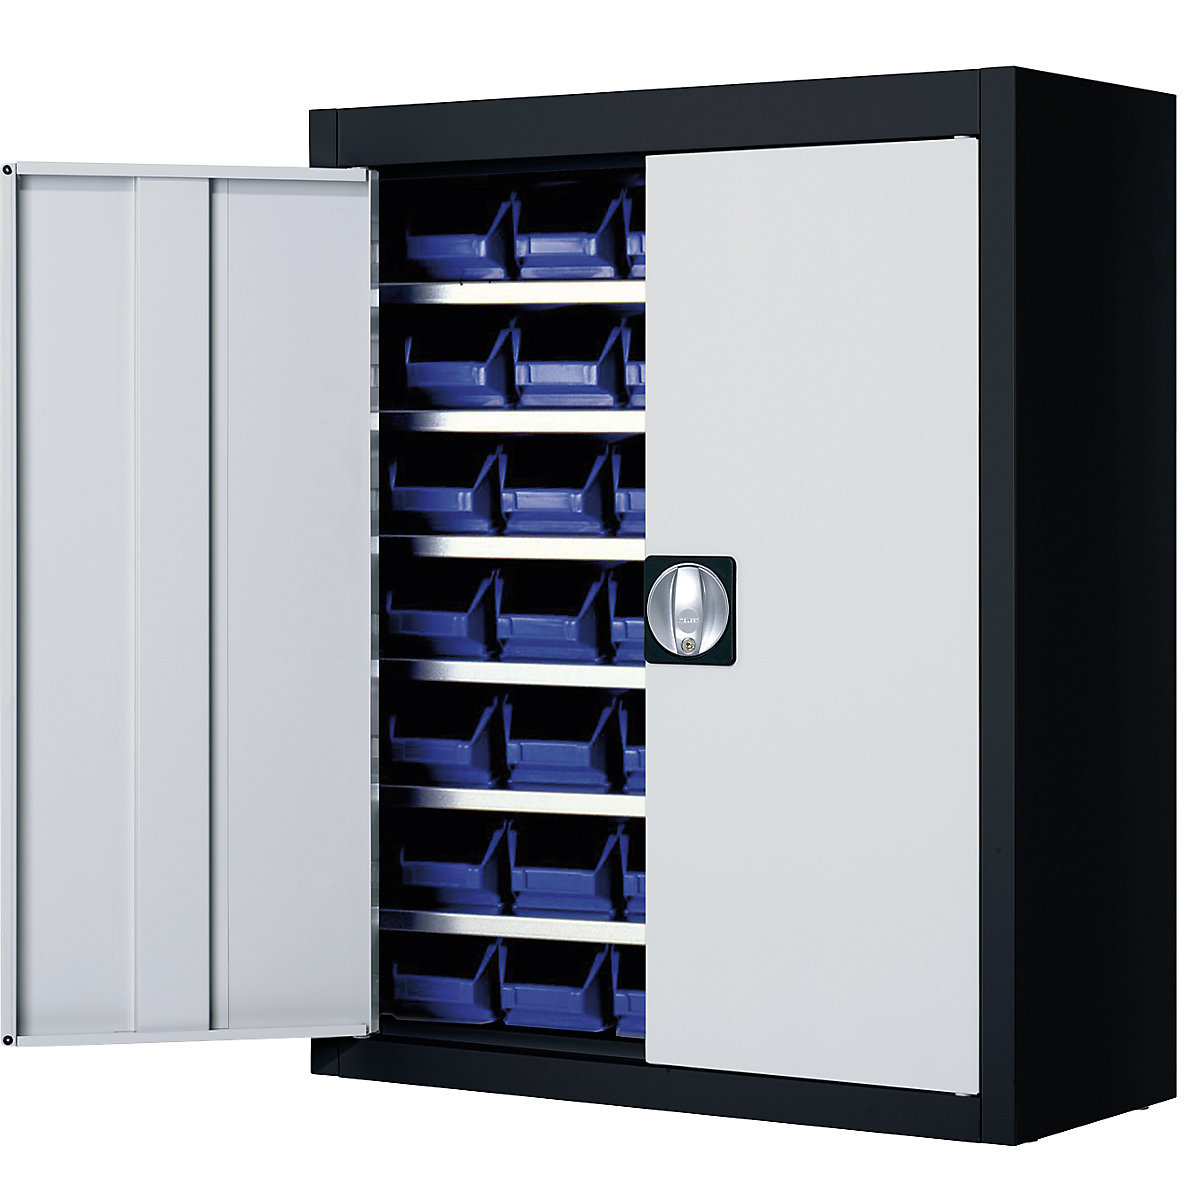 Skladišni ormar s otvorenim skladišnim kutijama – mauser, VxŠxD 820 x 680 x 280 mm, u dvije boje, korpus u crnoj boji, vrata u sivoj boji, 42 kutije-7